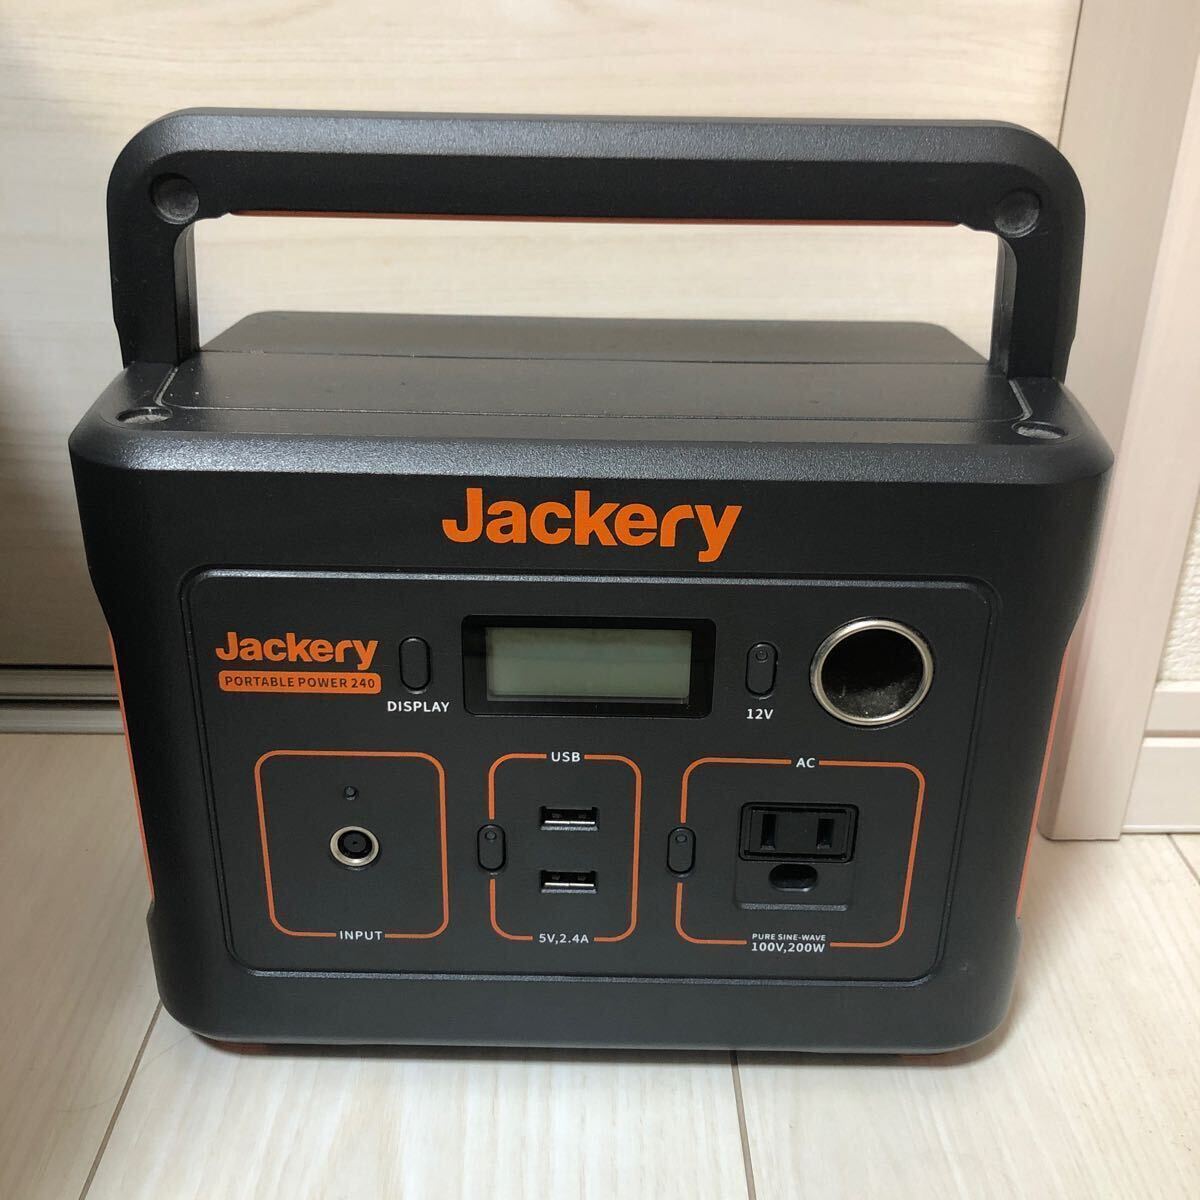 Jackery ジャクリ ポータブル電源 240Wh ポータブルバッテリー アウトドア 大容量 節電 停電対策 防災_画像1